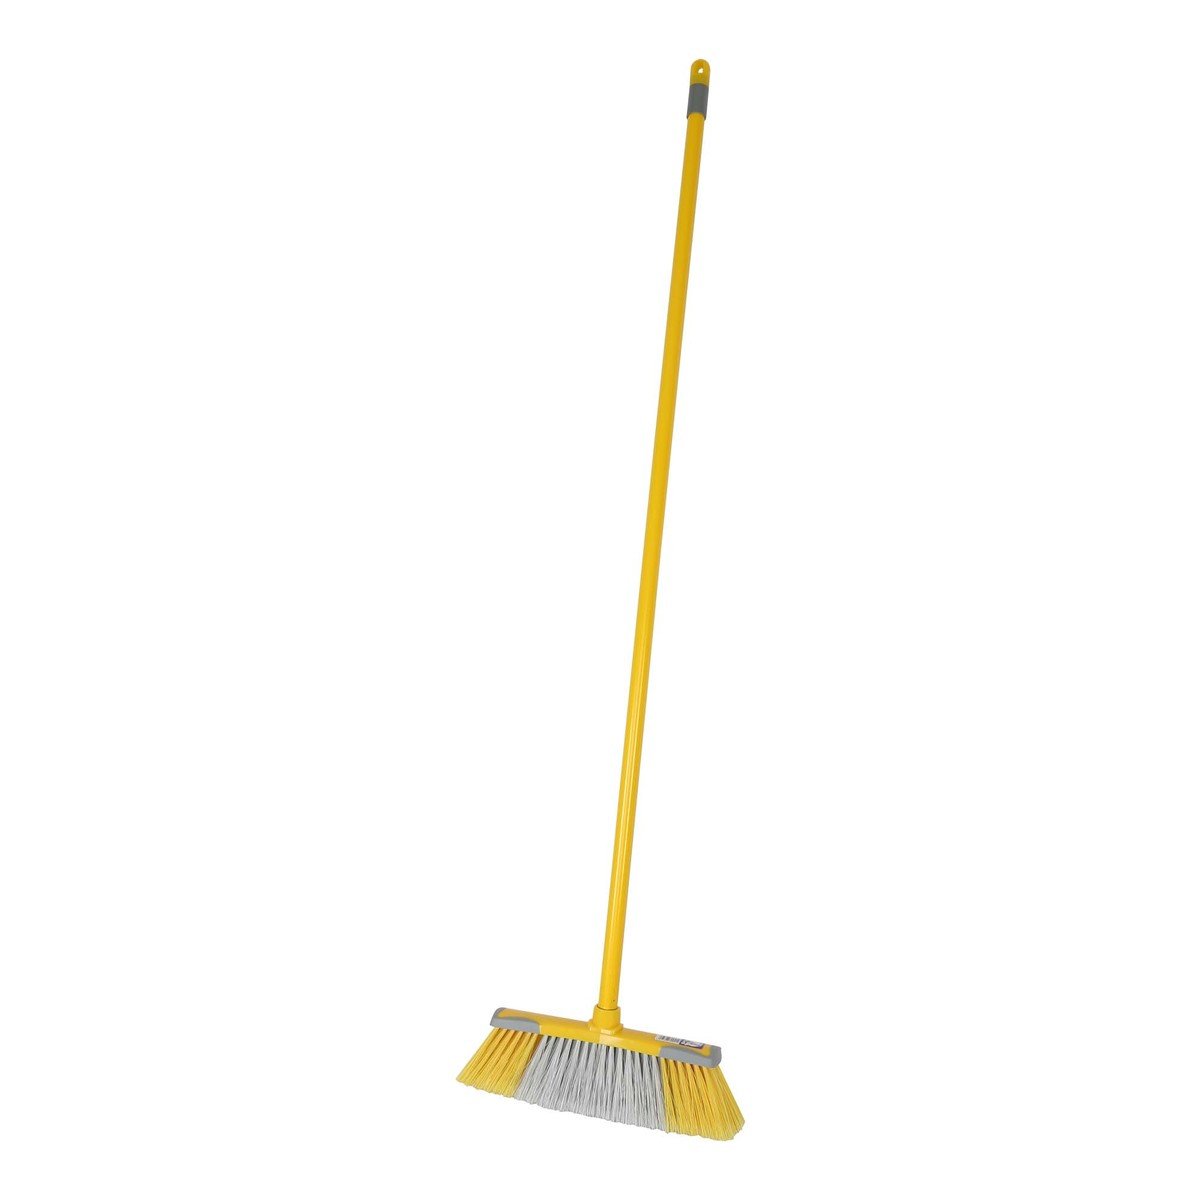 Mr.Brush Broom Unika Yellow 01000410012